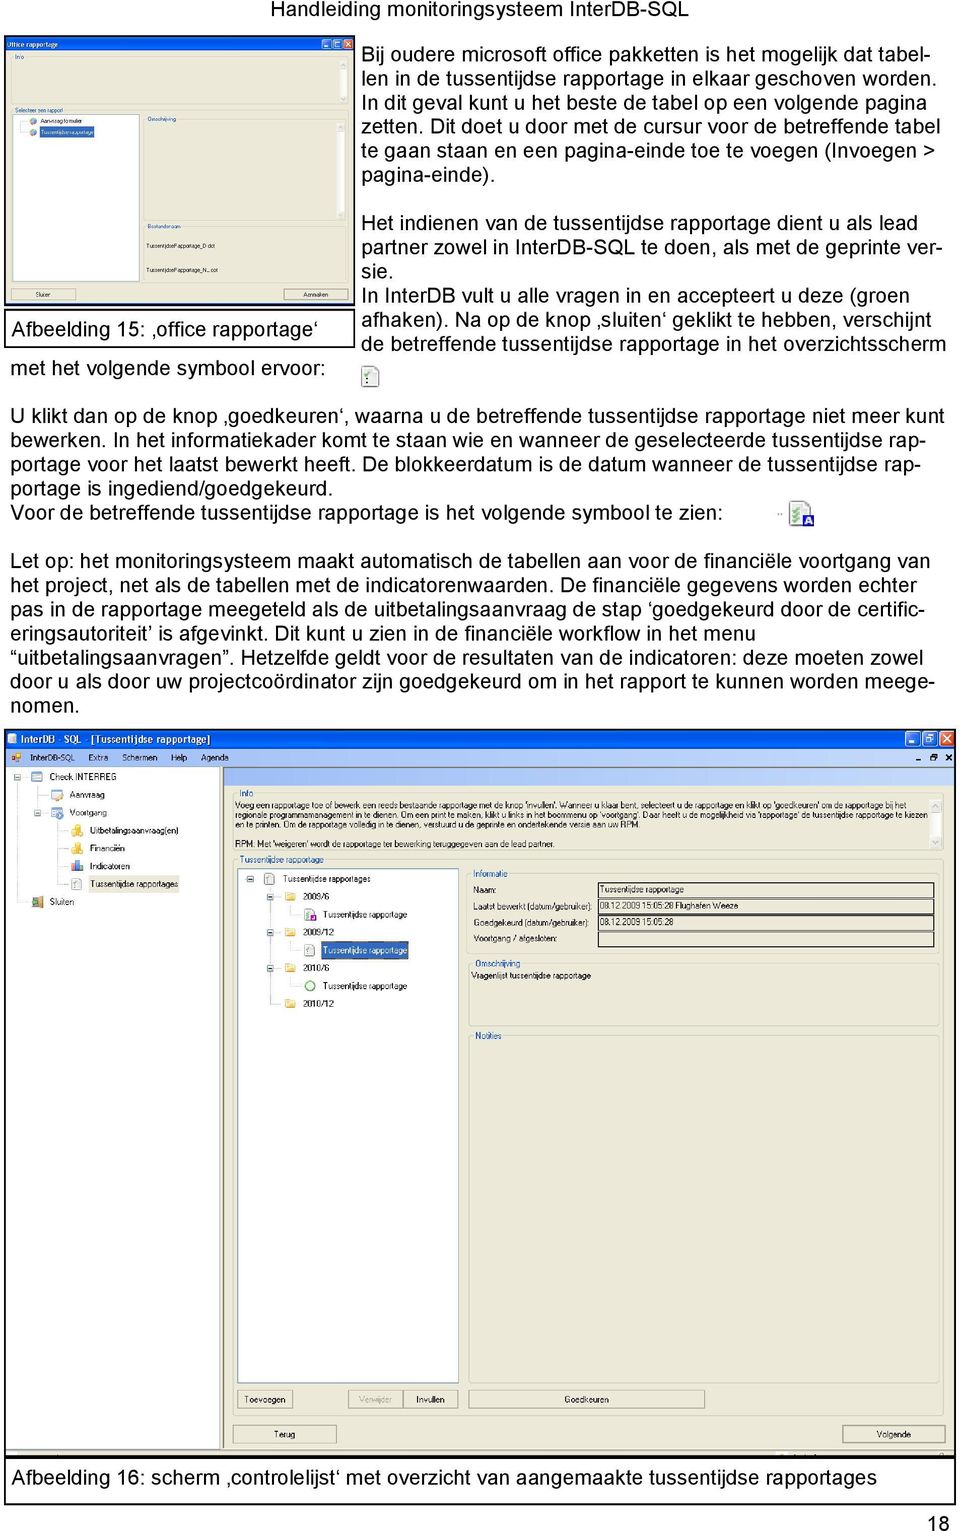 Afbeelding 15: office rapportage met het volgende symbool ervoor: Het indienen van de tussentijdse rapportage dient u als lead partner zowel in InterDB-SQL te doen, als met de geprinte versie.